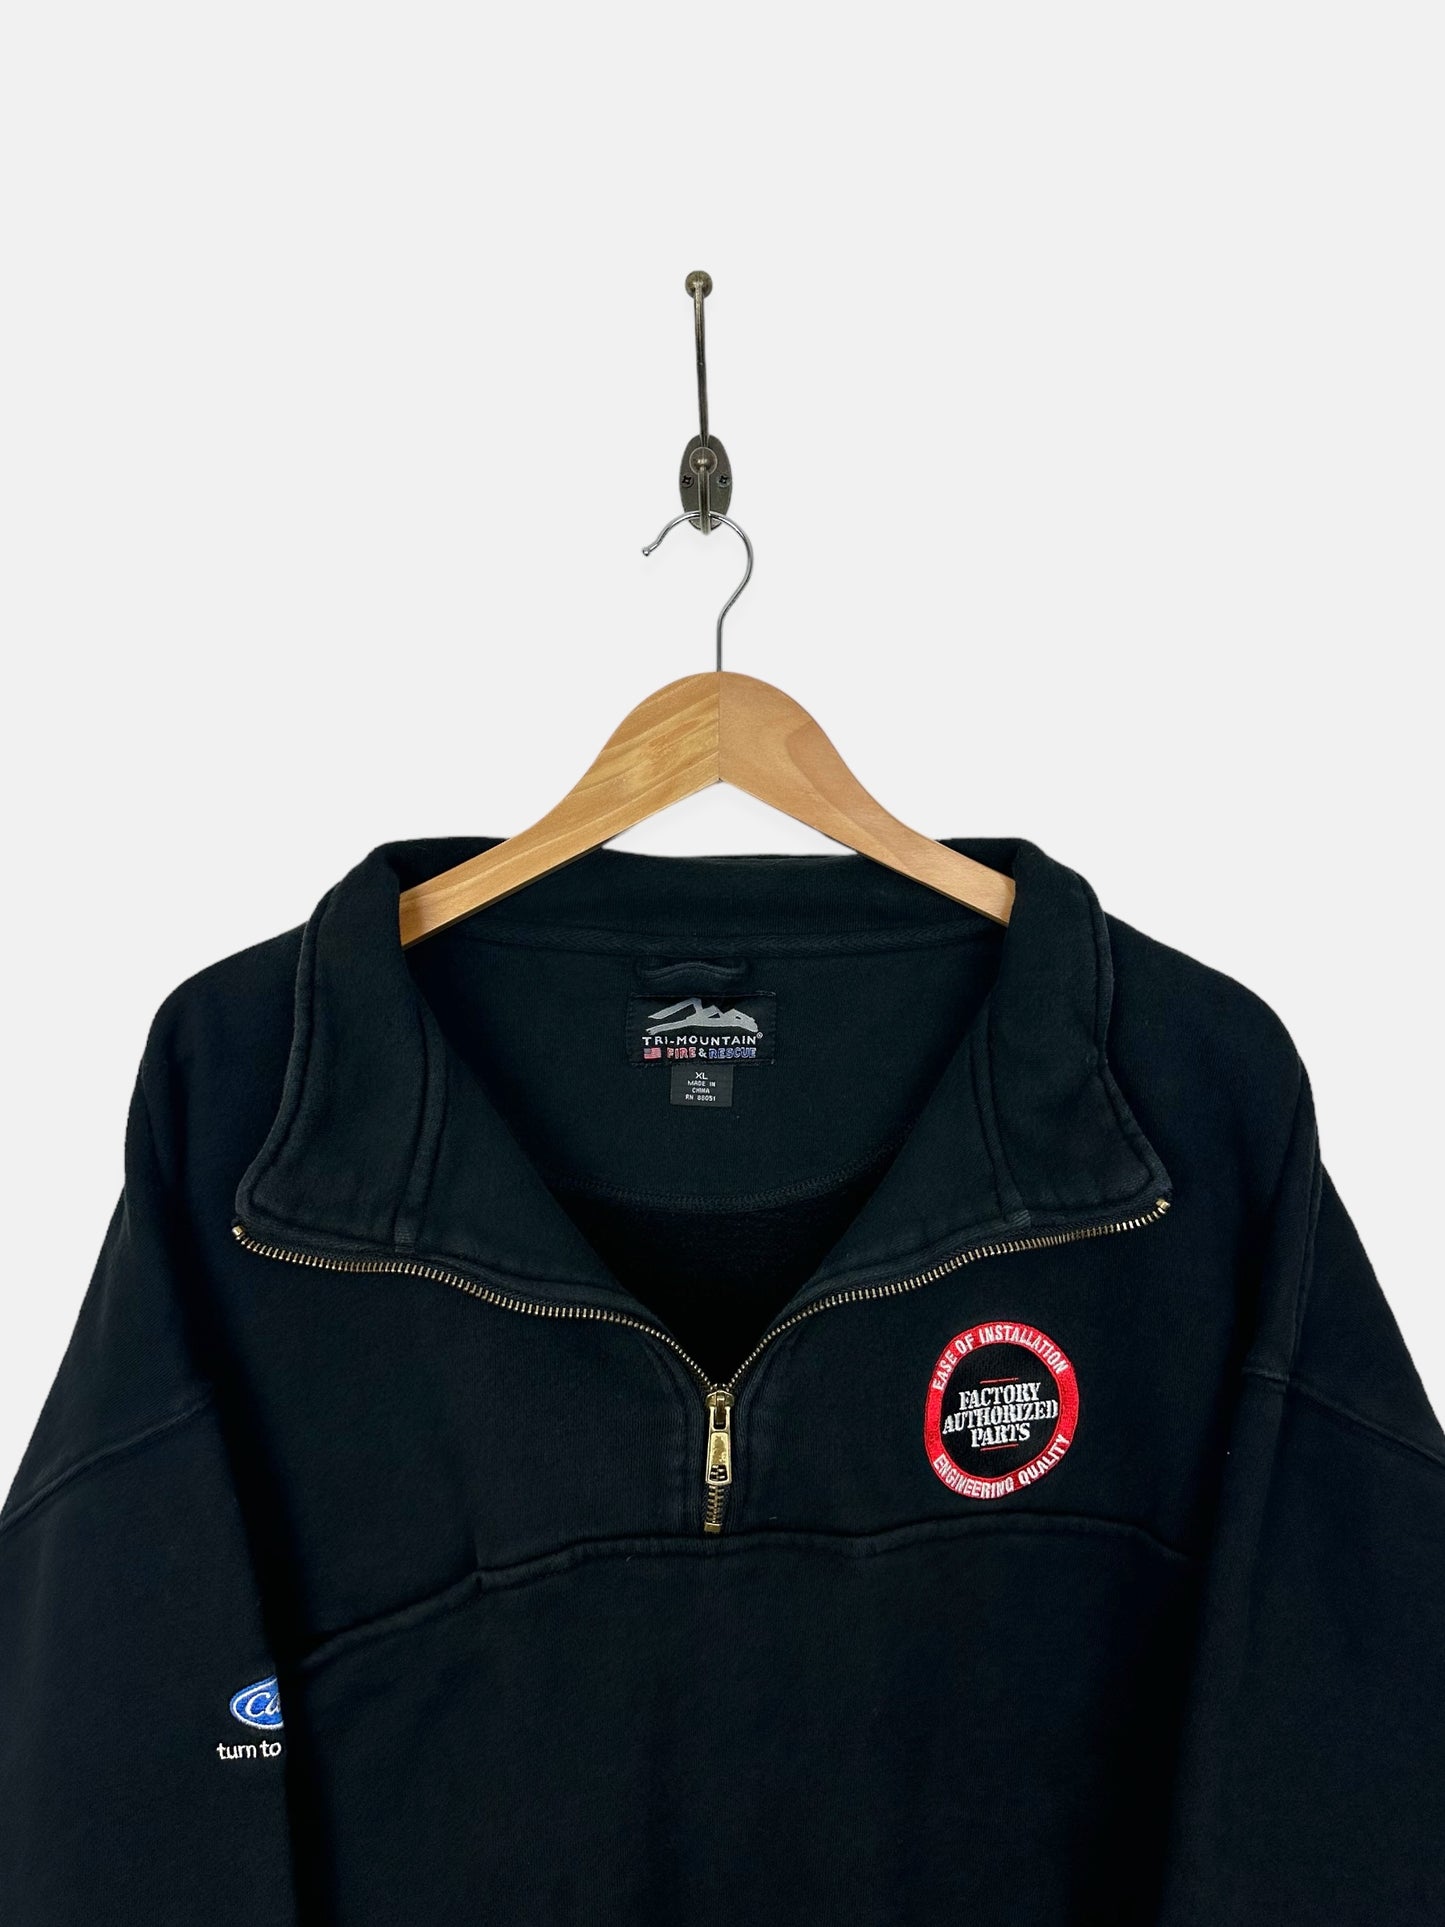 90's Factory Authorised Parts Embroidered Vintage Quarterzip Sweatshirt Size M-L